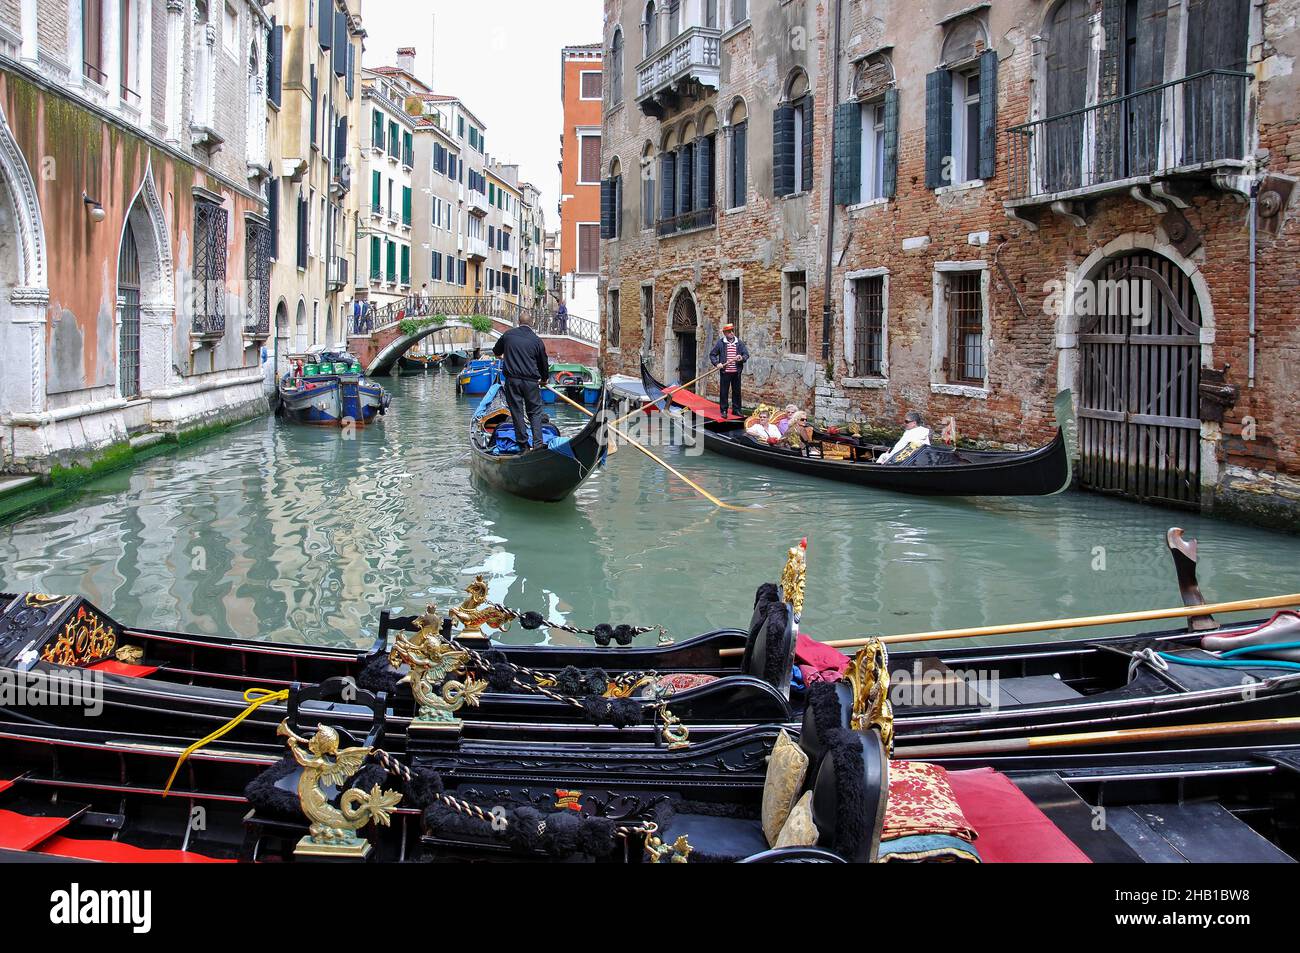 Gondola on backstreet canal, Venice (Venezia), Veneto Region, Italy Stock Photo